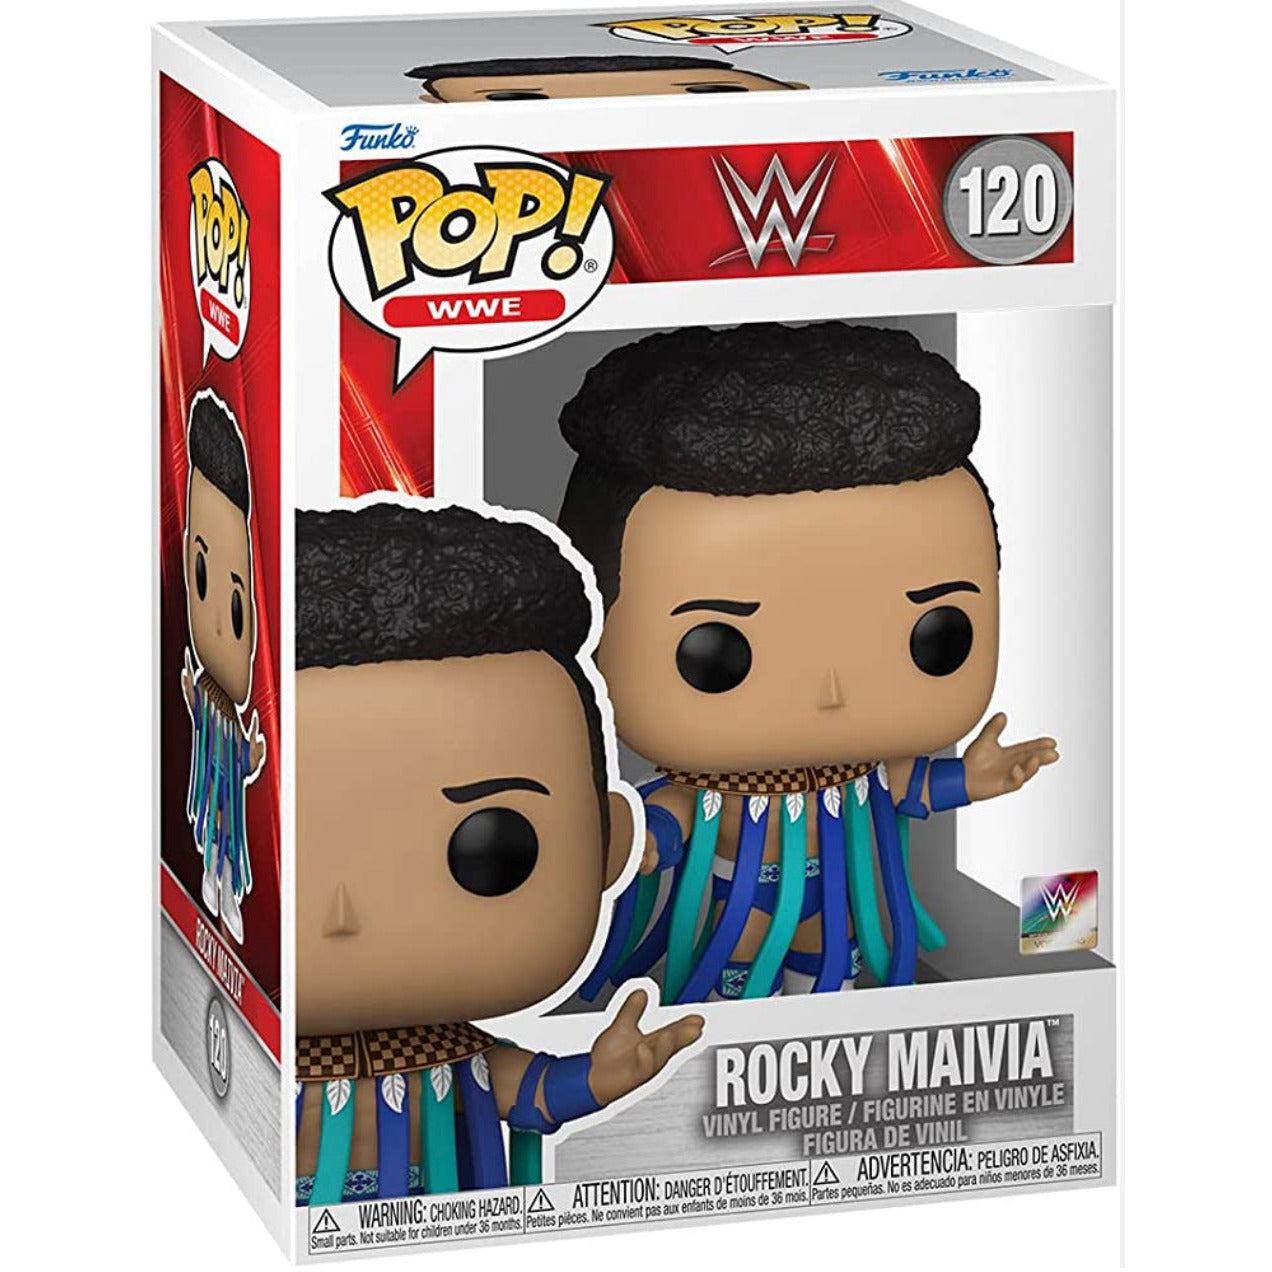 Funko Pop! WWE Rocky Maivia #120 Figure in stock